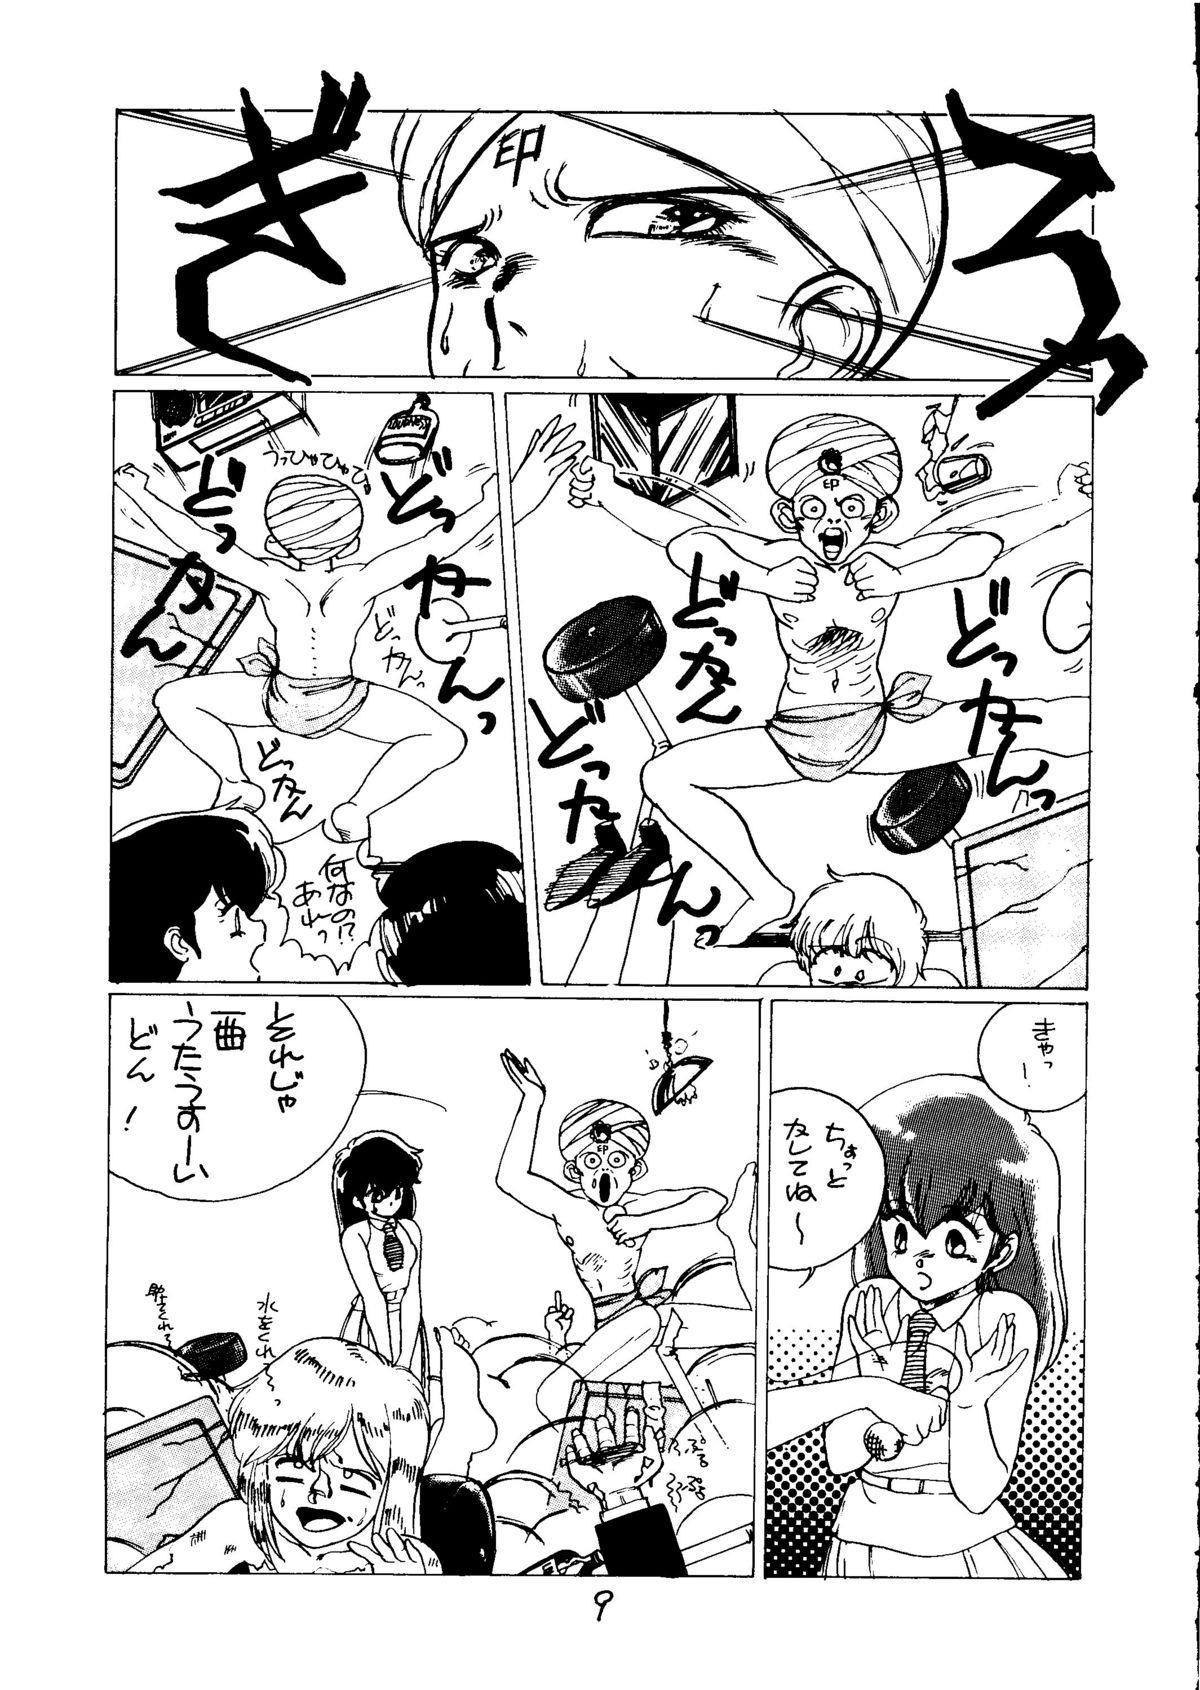 Plug Tororoimo Vol. 5 - Urusei yatsura Dirty pair Fist of the north star Pete - Page 8